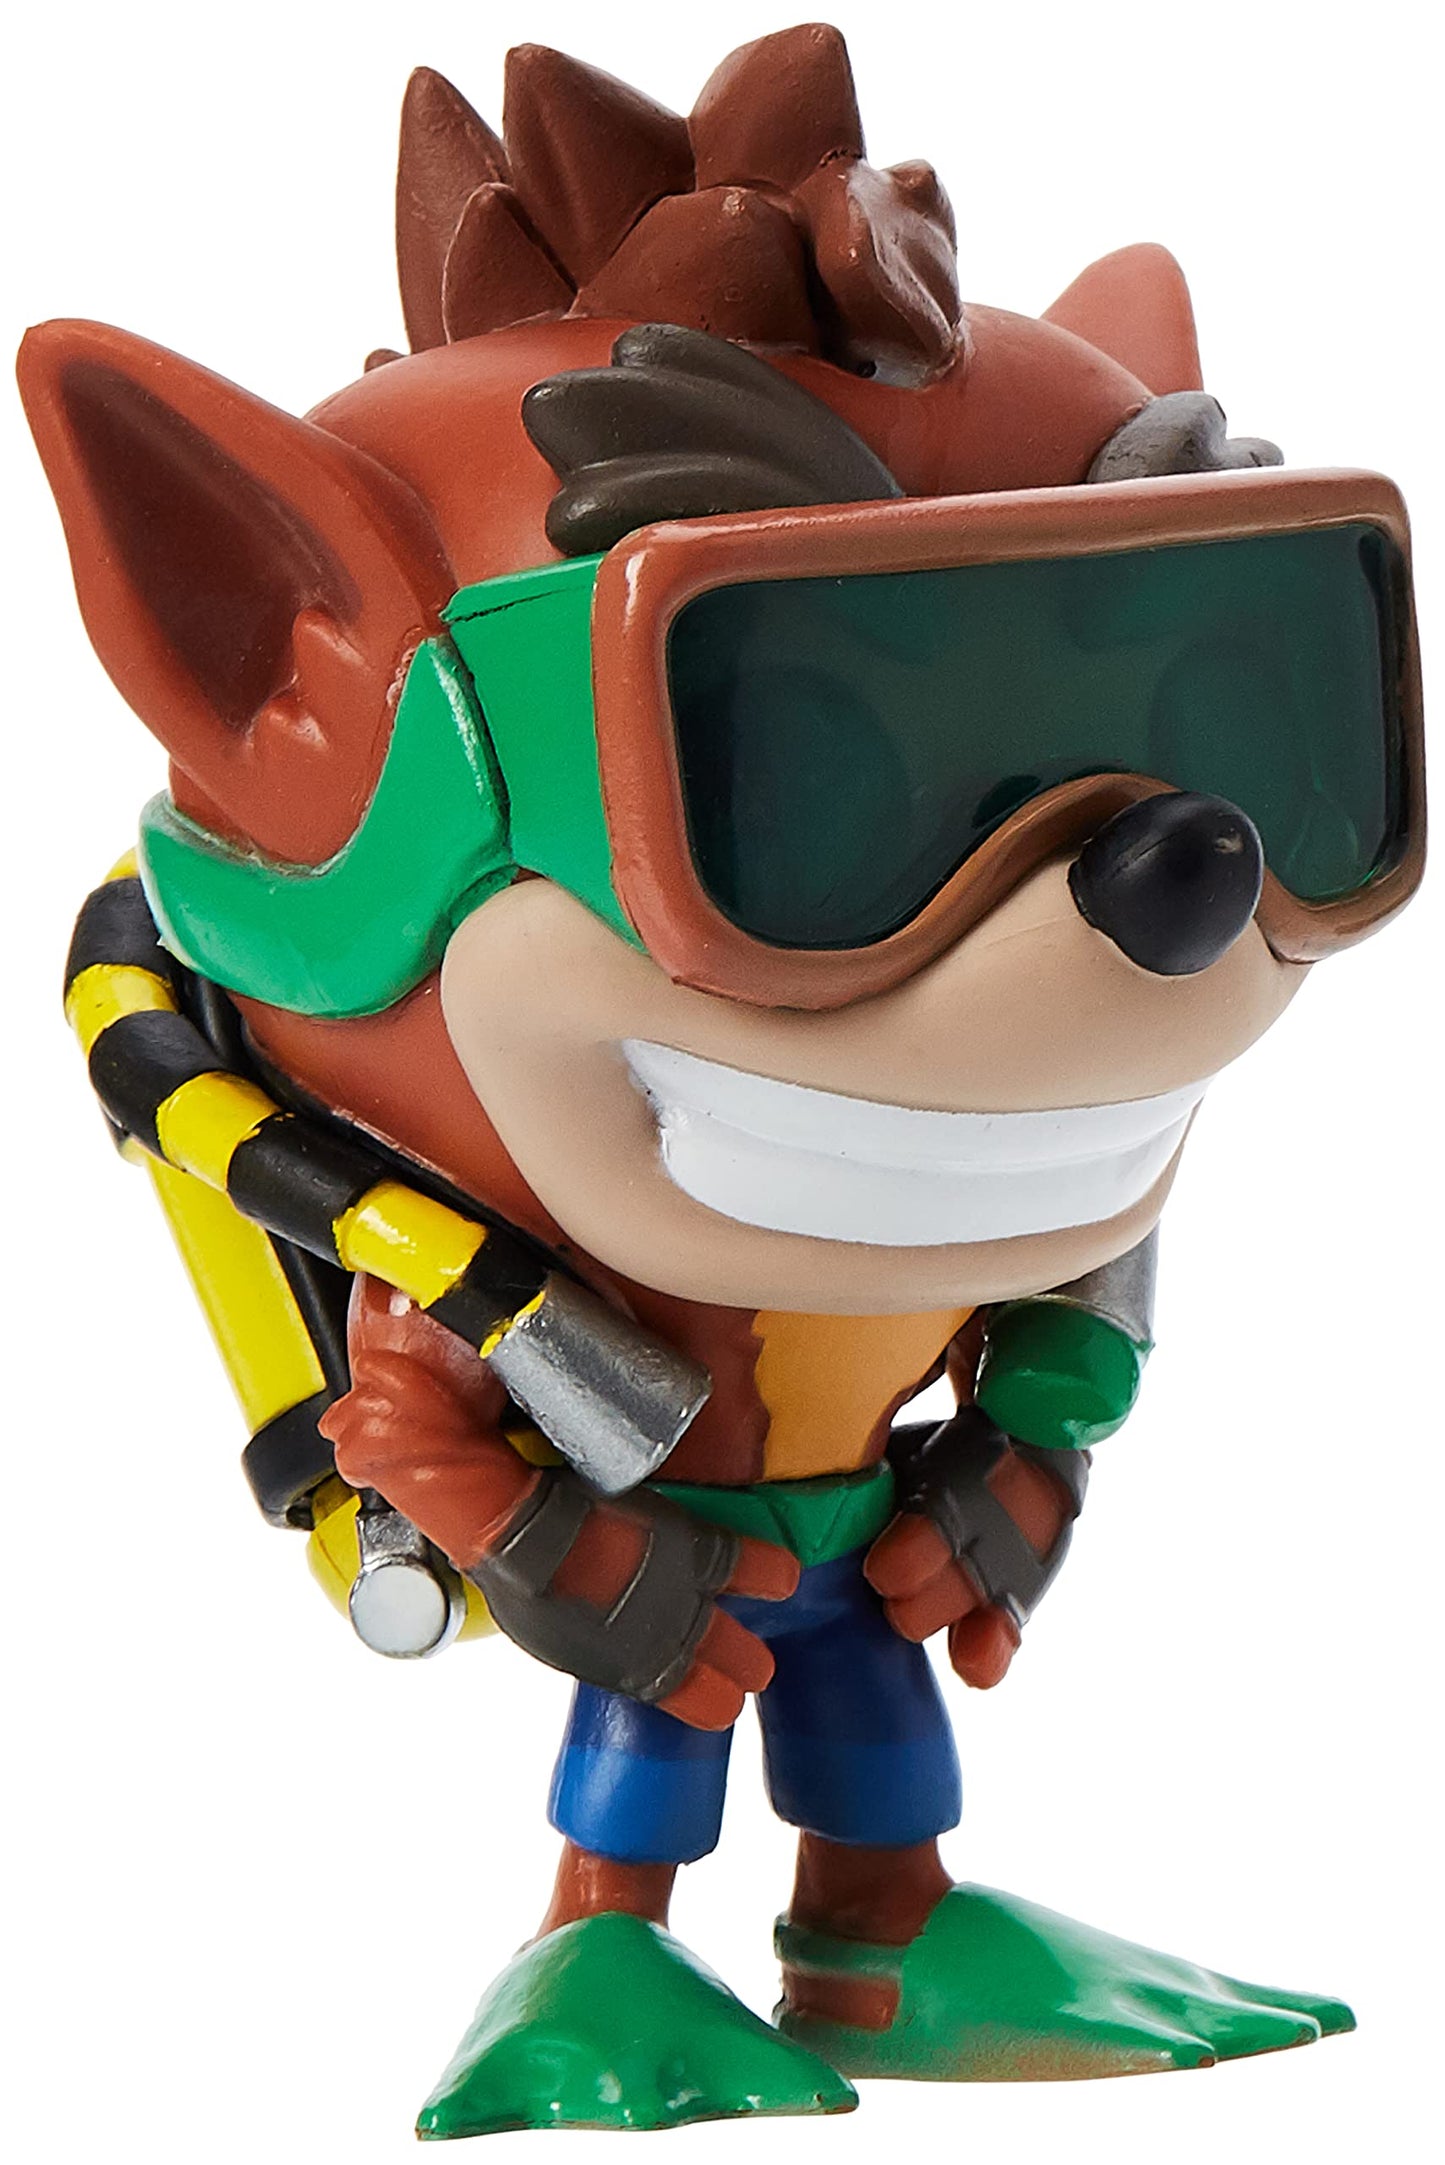 Funko POP! Games: Crash Bandicoot - Crash With Scuba Gear